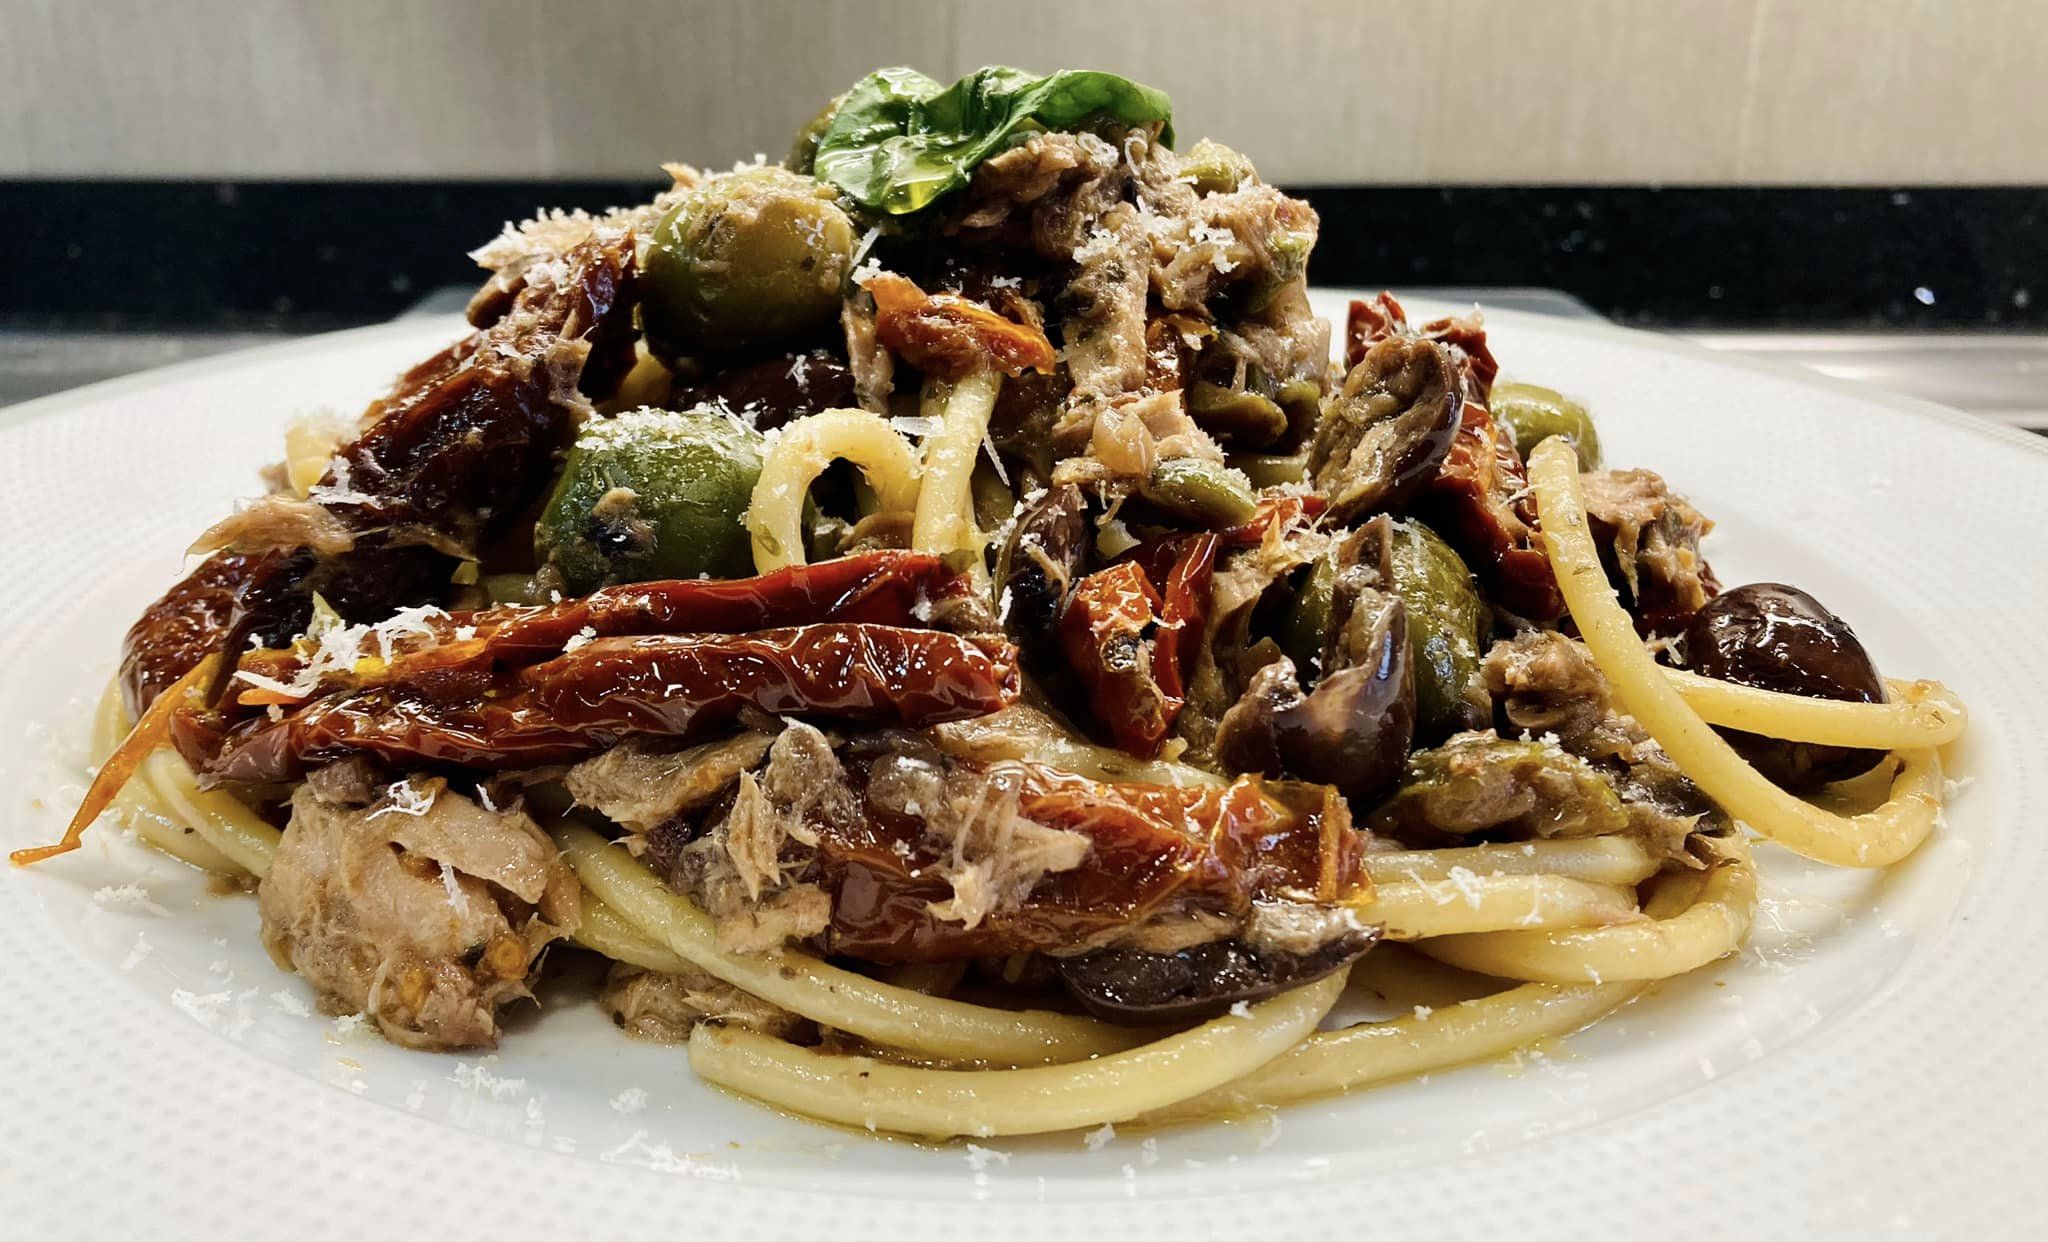 spaghetti-di-sant’agata,-il-primo-catanese-piu-veloce-dell’aglio-e-olio-con-il-tonno-in-scatola.-l’antica-ricetta-della-nonna-siciliana